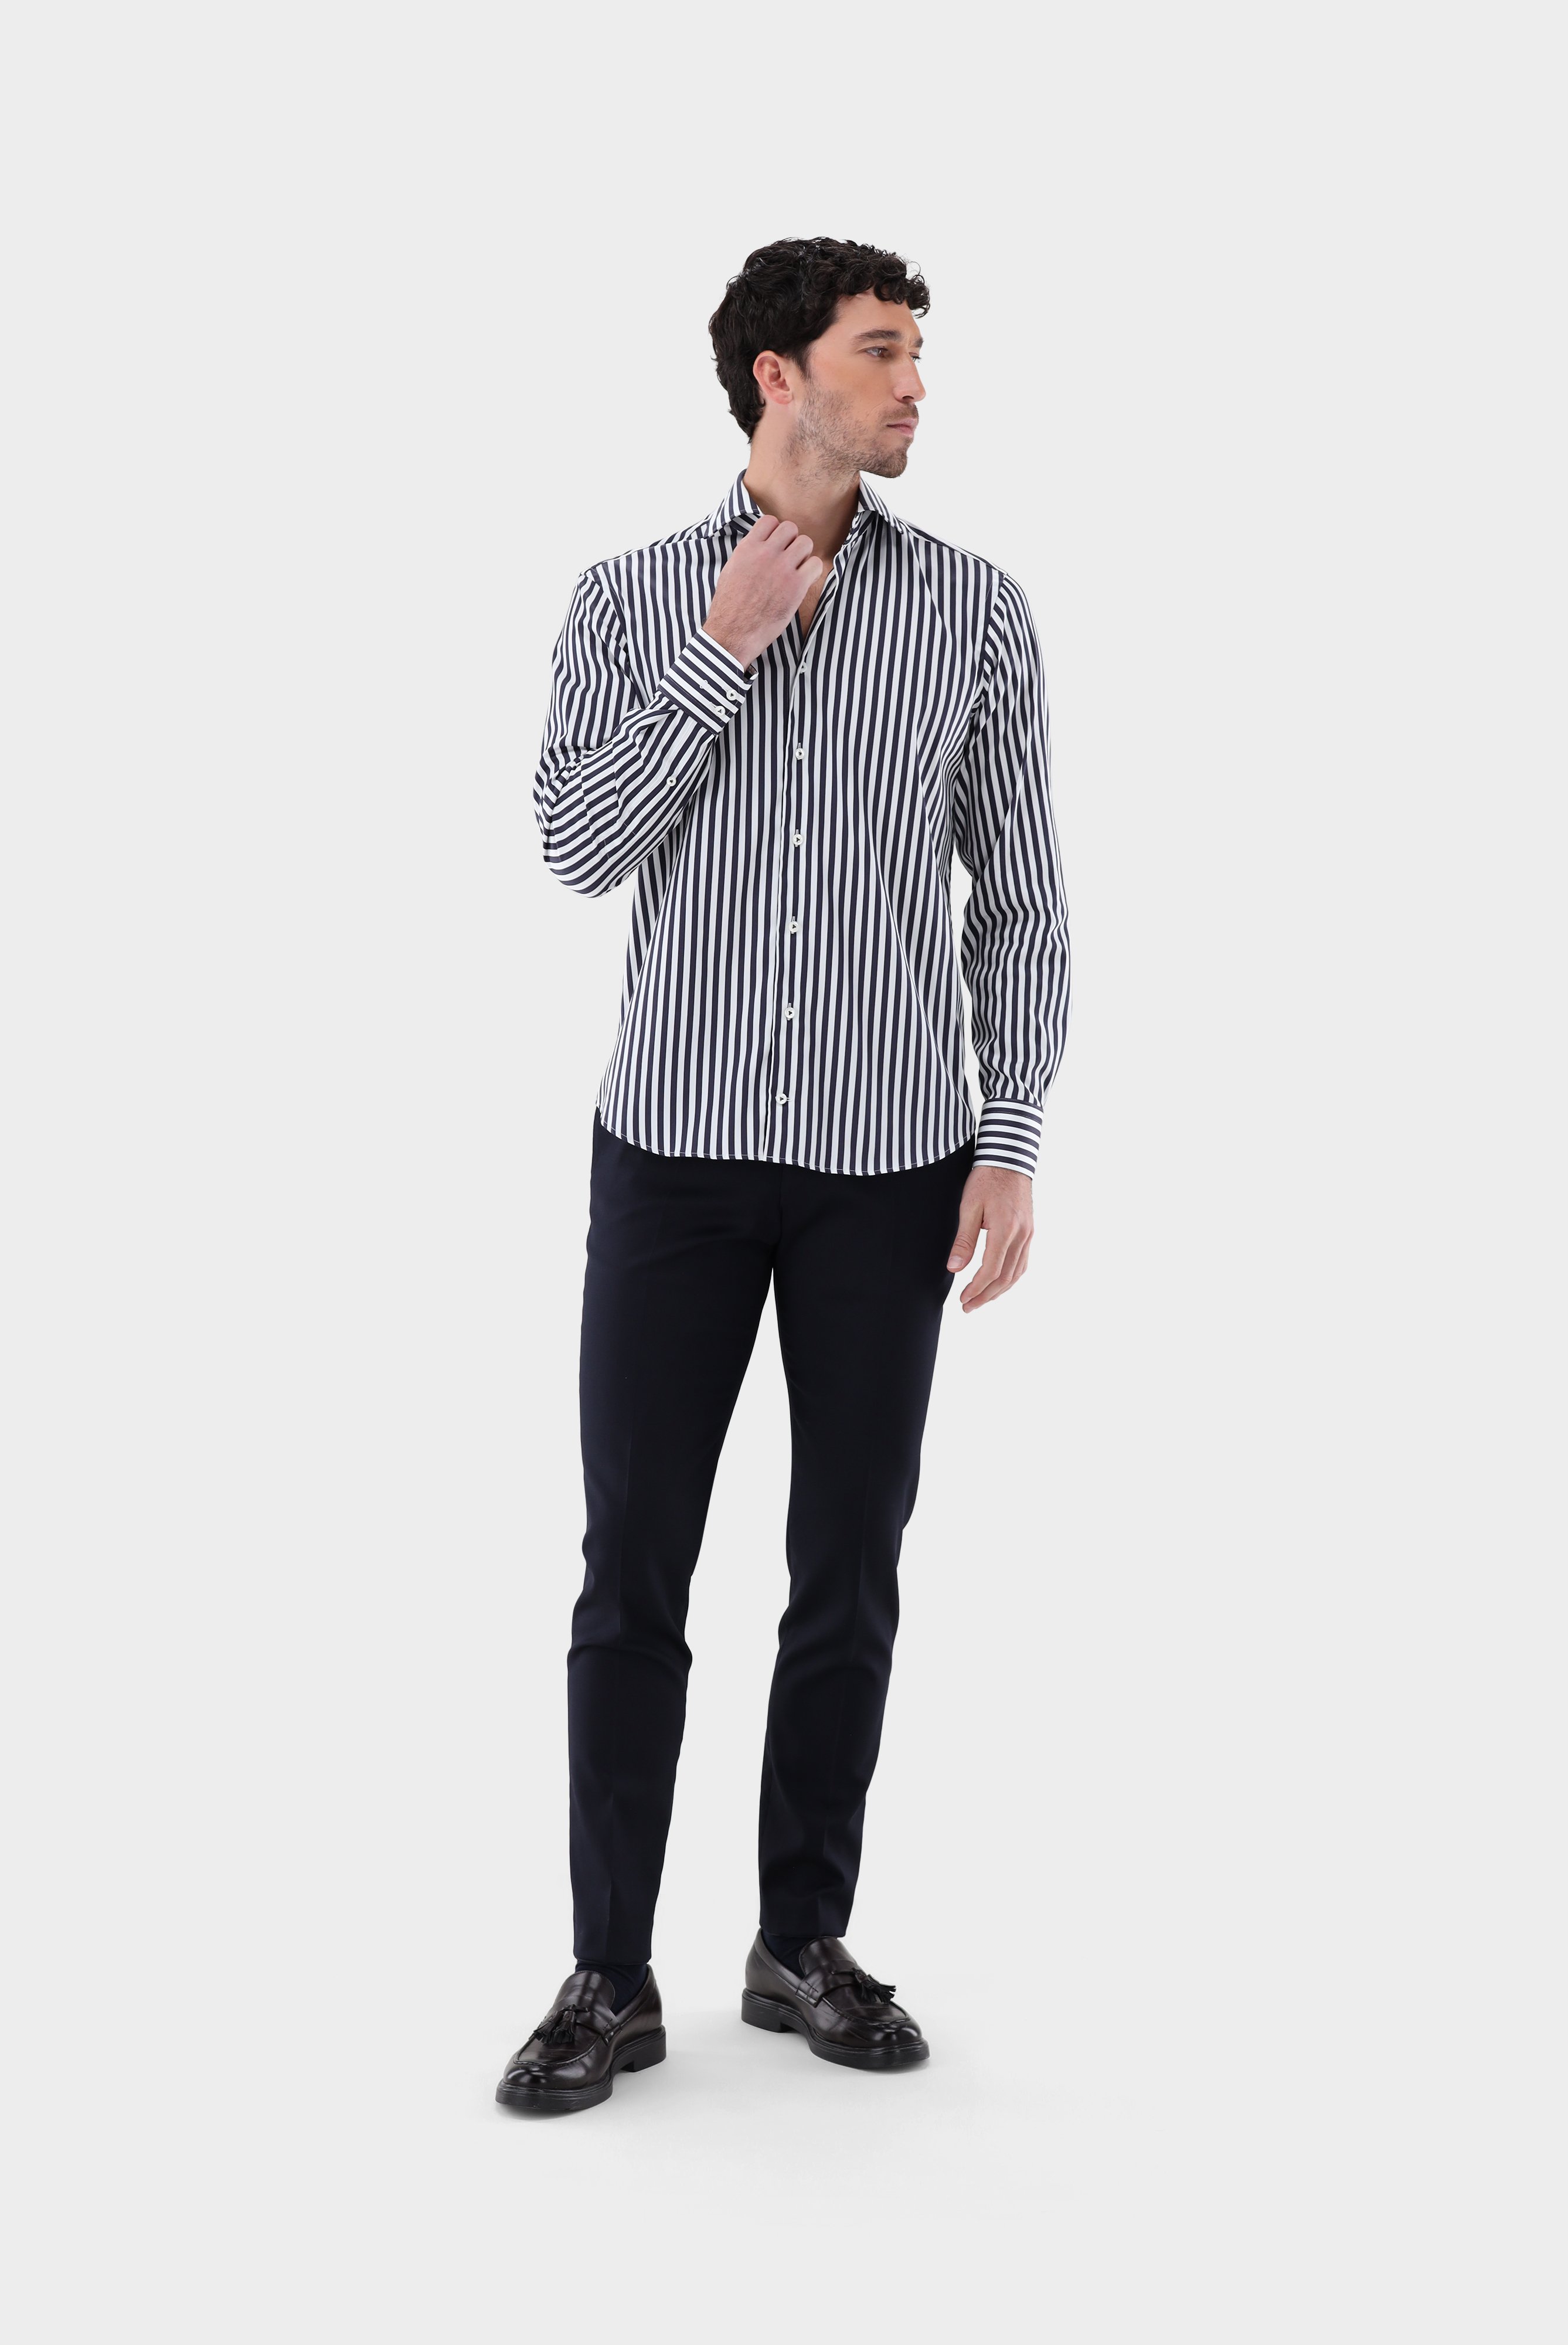 Casual Hemden+Gestreiftes Hemd aus Baumwollstretch Tailor Fit+20.3283.NV.171959.790.38